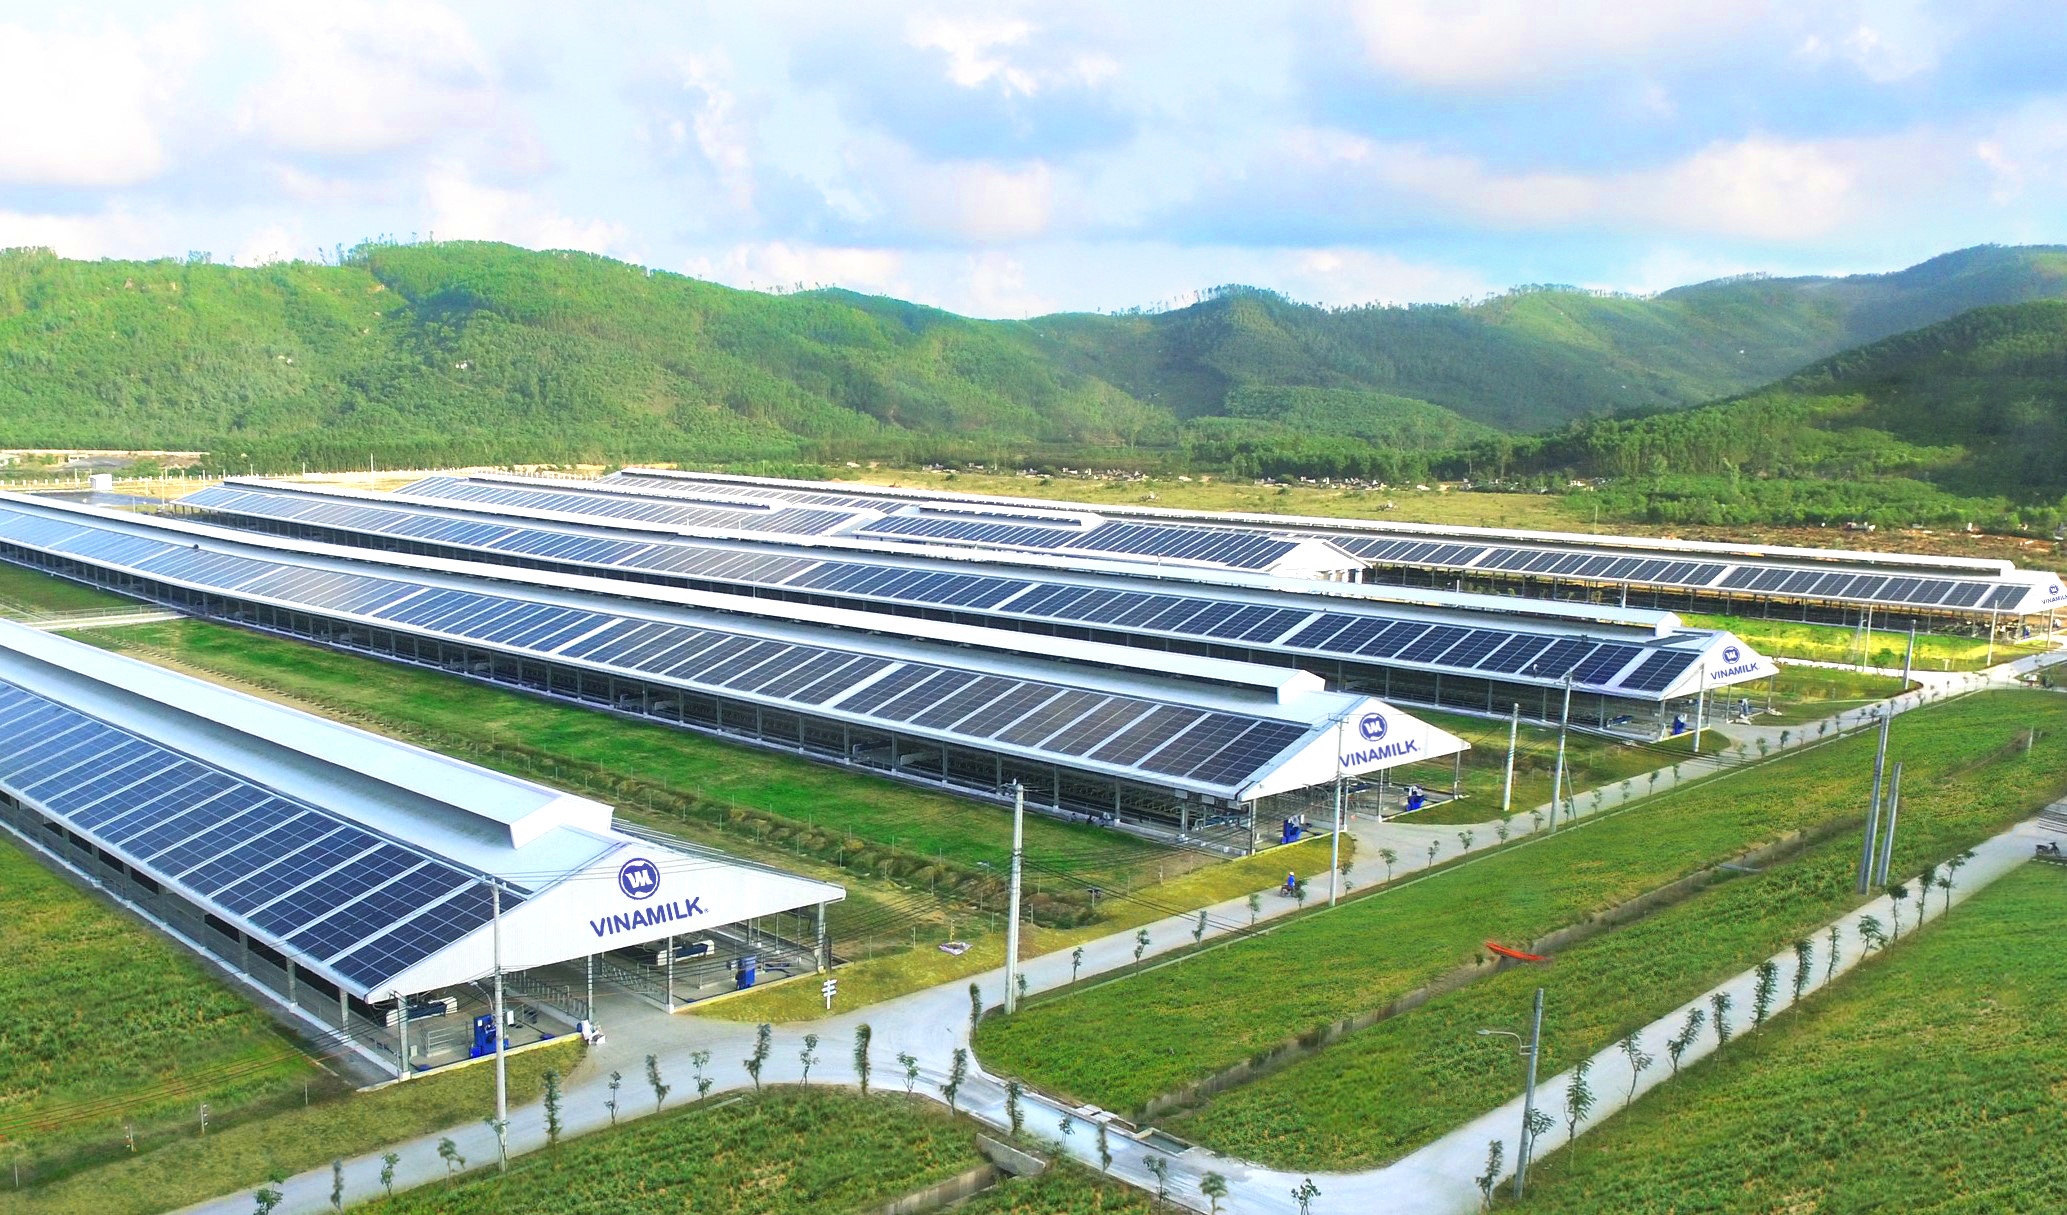 : Hệ thống năng lượng mặt trời là dấu chân xanh nổi bật trong việc sử dụng năng lượng tái tạo vào hoạt động sản xuất kinh doanh của Vinamilk